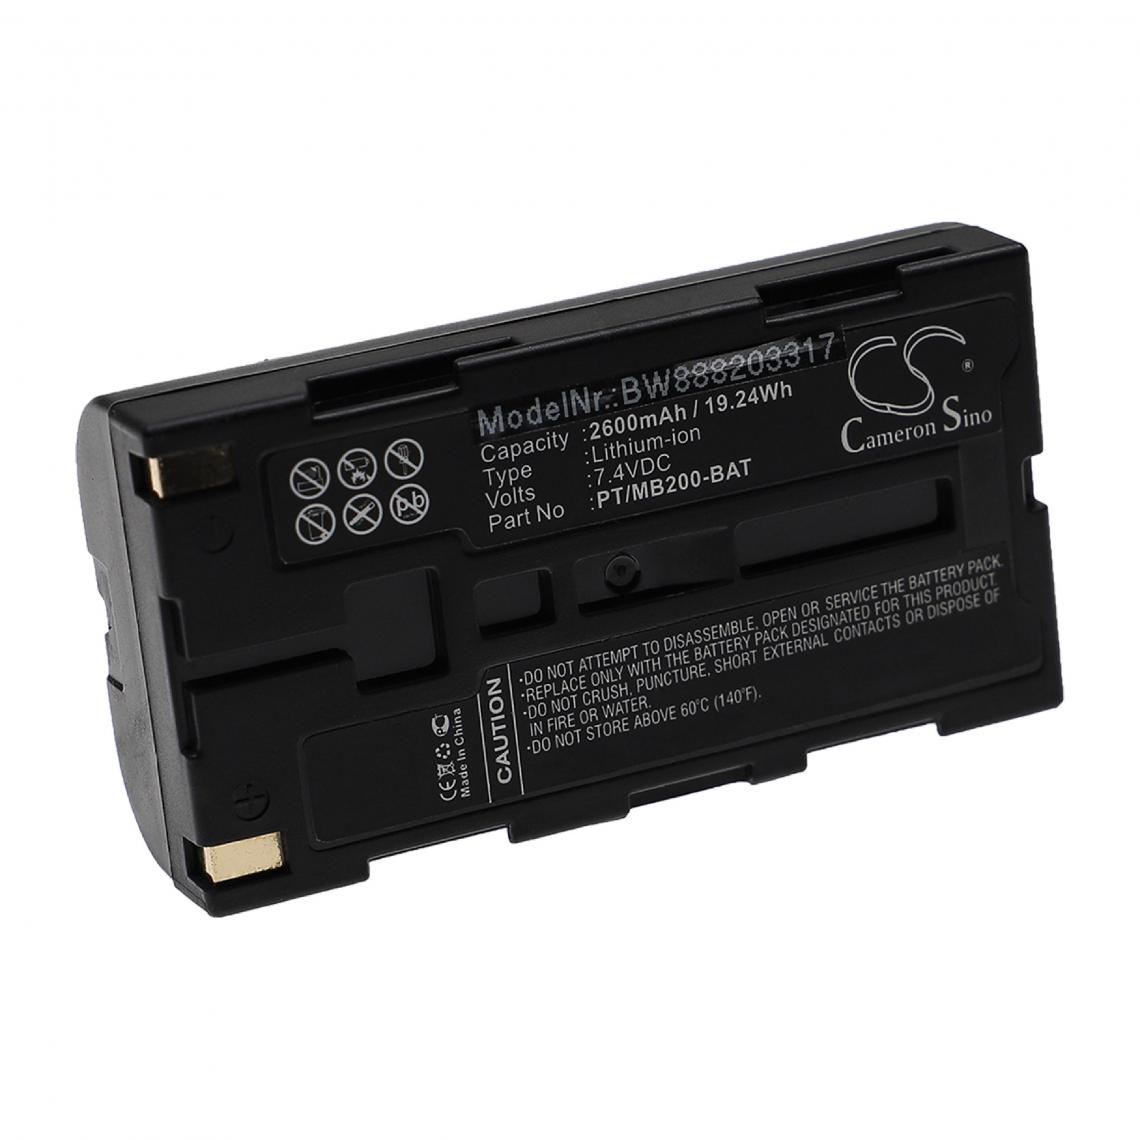 Vhbw - vhbw Batterie remplacement pour Sato PT/MB200-BAT pour imprimante, scanner, imprimante d'étiquettes (2600mAh, 7,4V, Li-ion) - Imprimante Jet d'encre